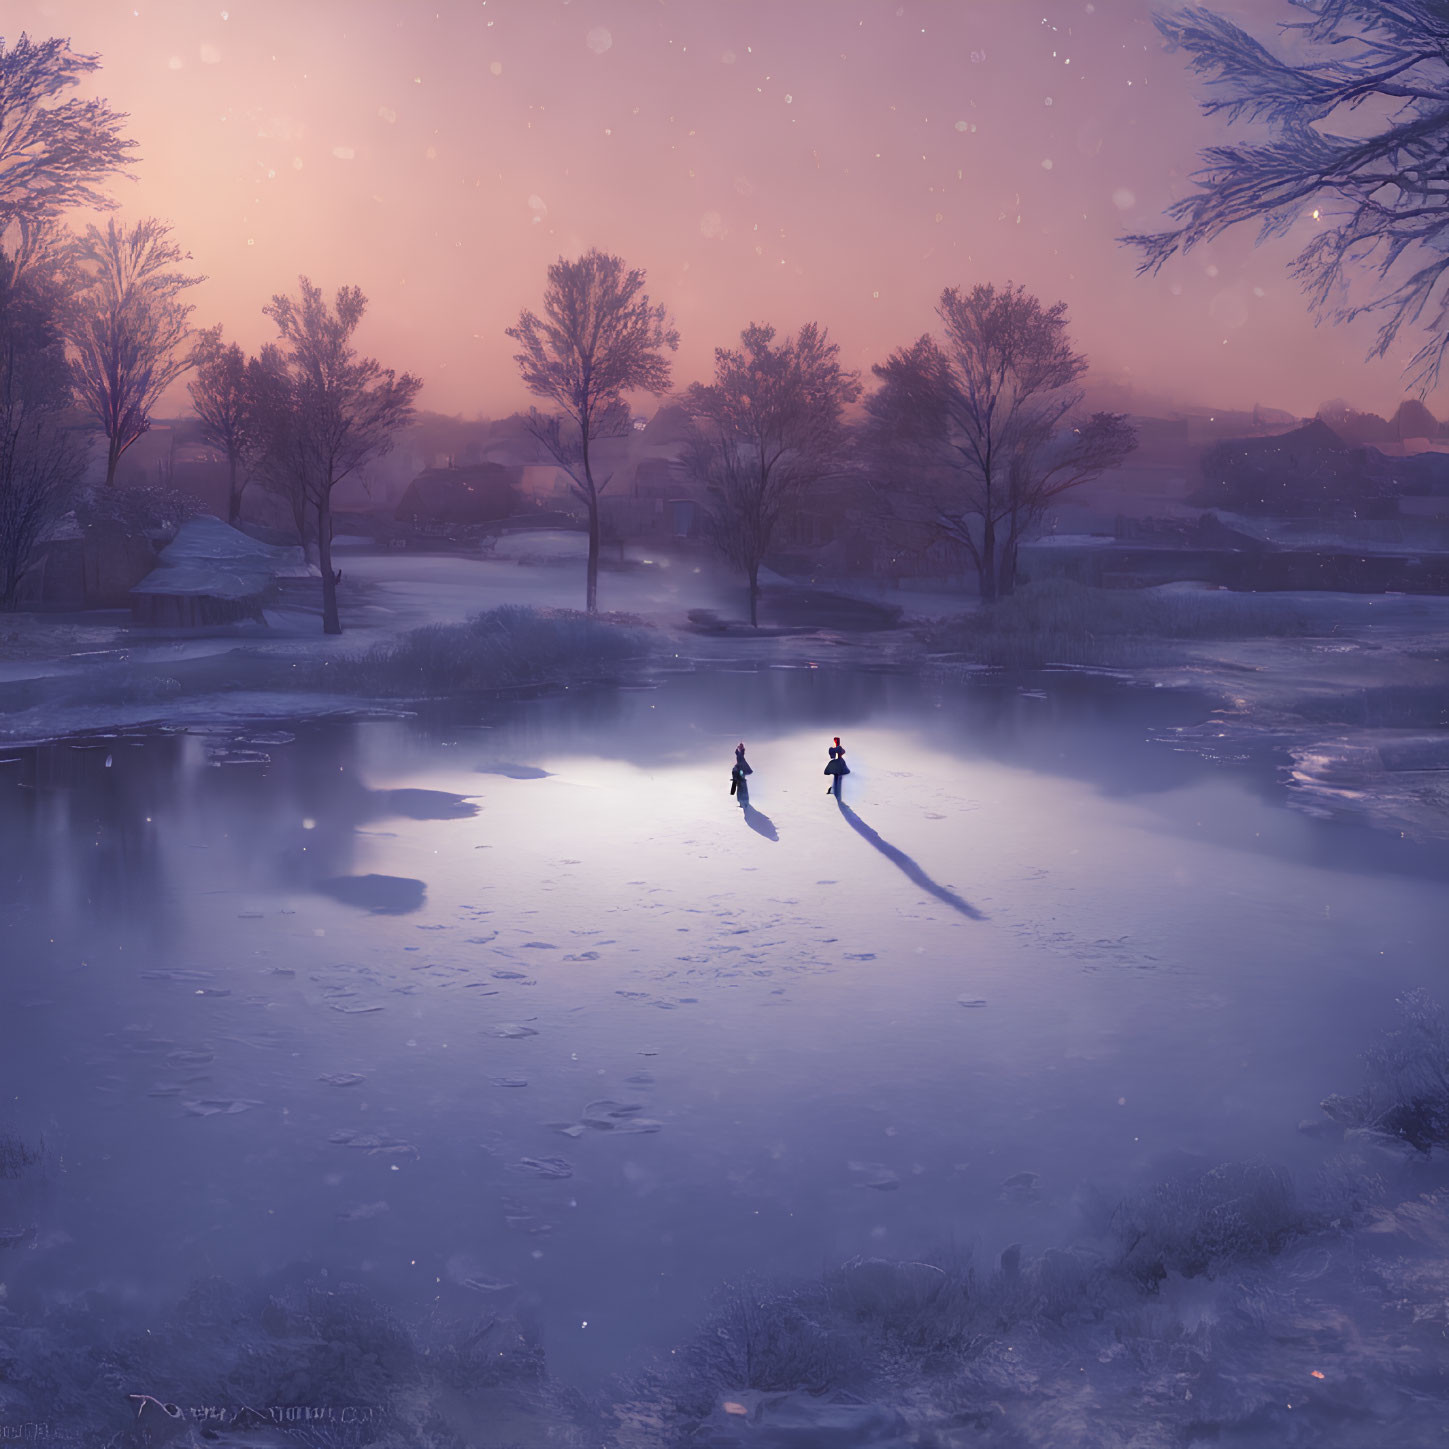 Winter scene: Two people ice skate in snowy dusk landscape